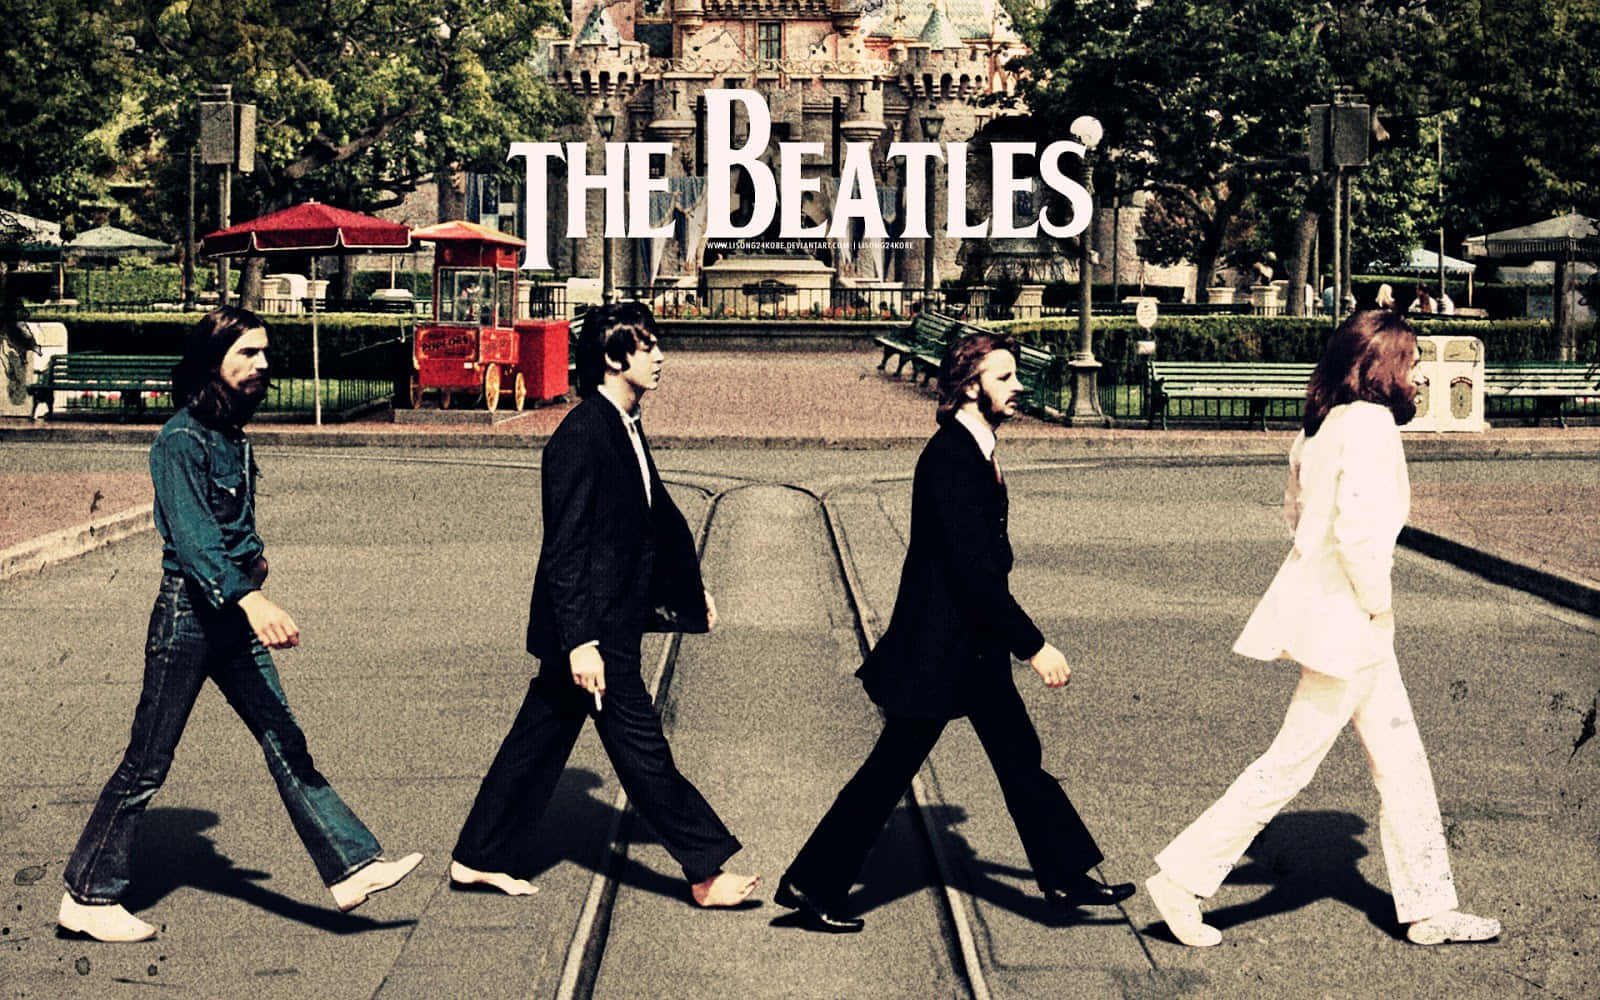 Rock legends, The Beatles